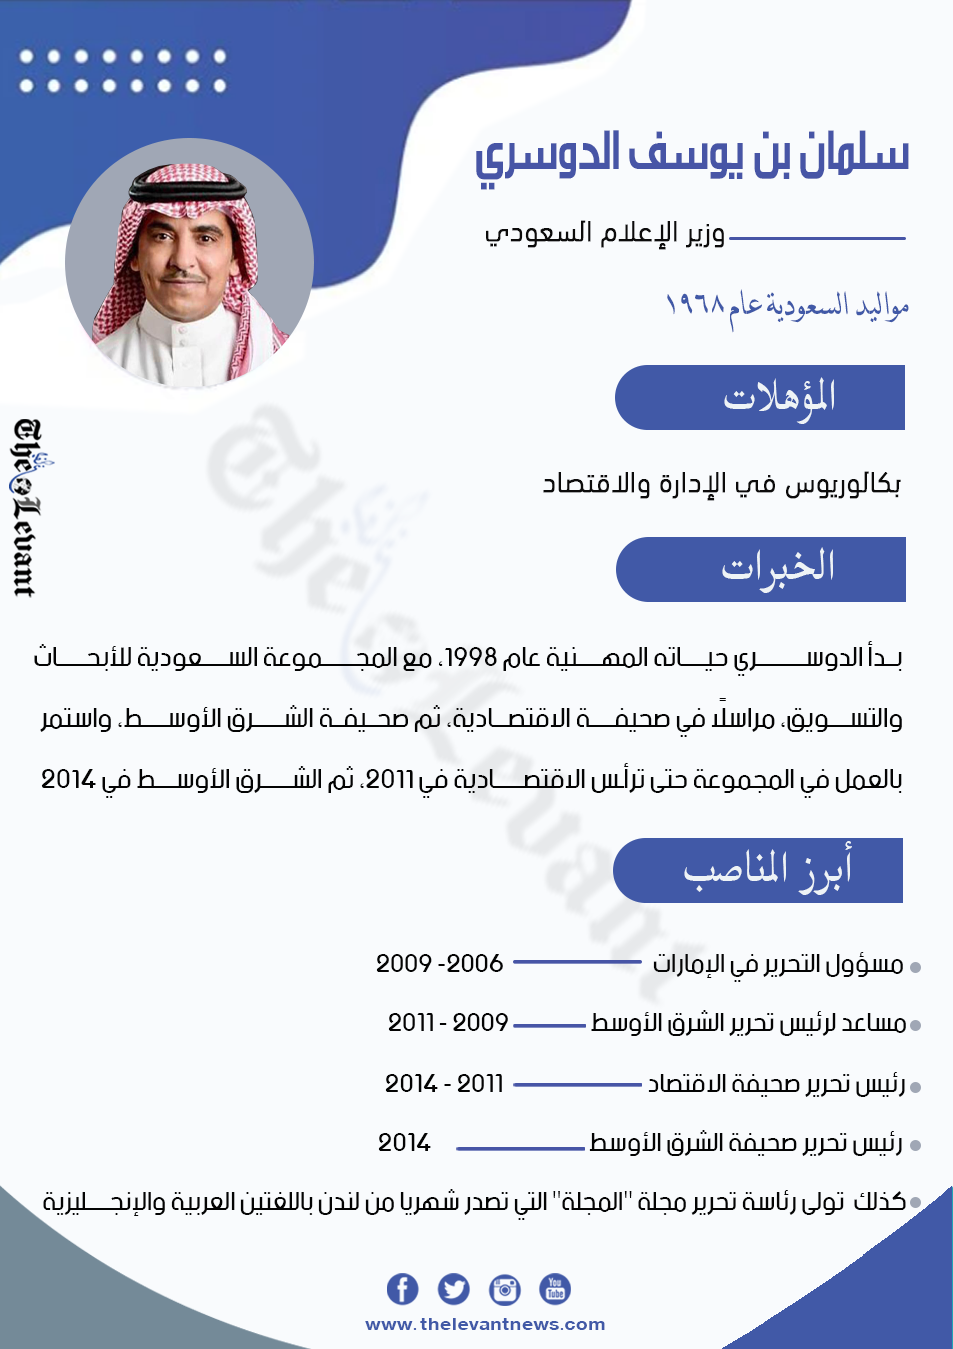 وزير الإعلام السعودي الجديد سلمان الدوسري